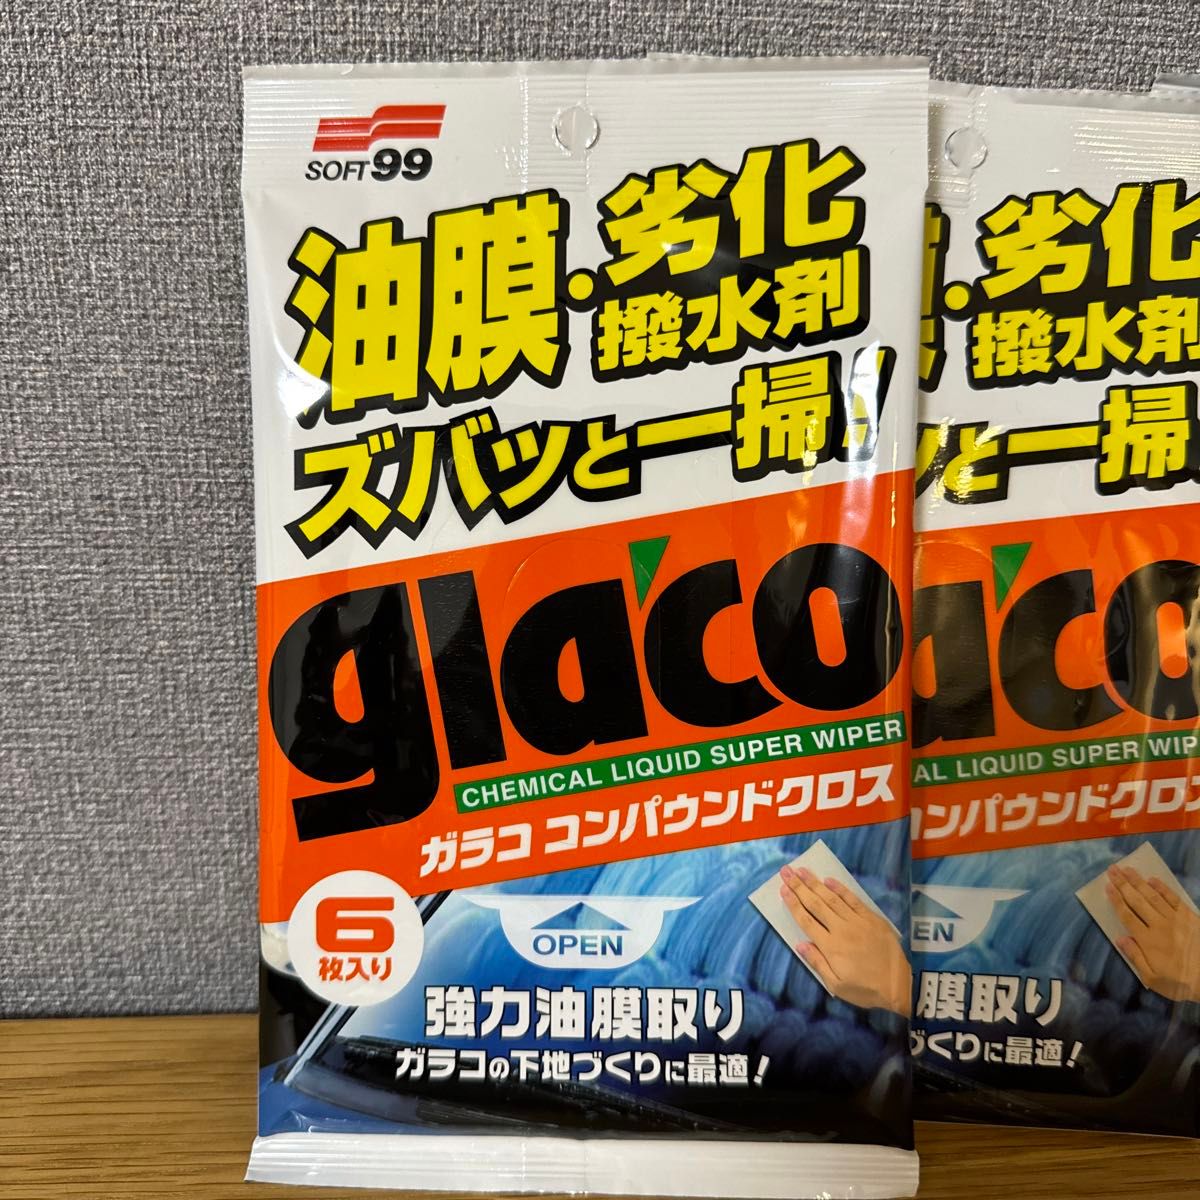 【新品未開封】ソフト99(SOFT99) glaco(ガラコ) ガラスクリーナー ガラココンパウンドクロス 6枚4袋セット